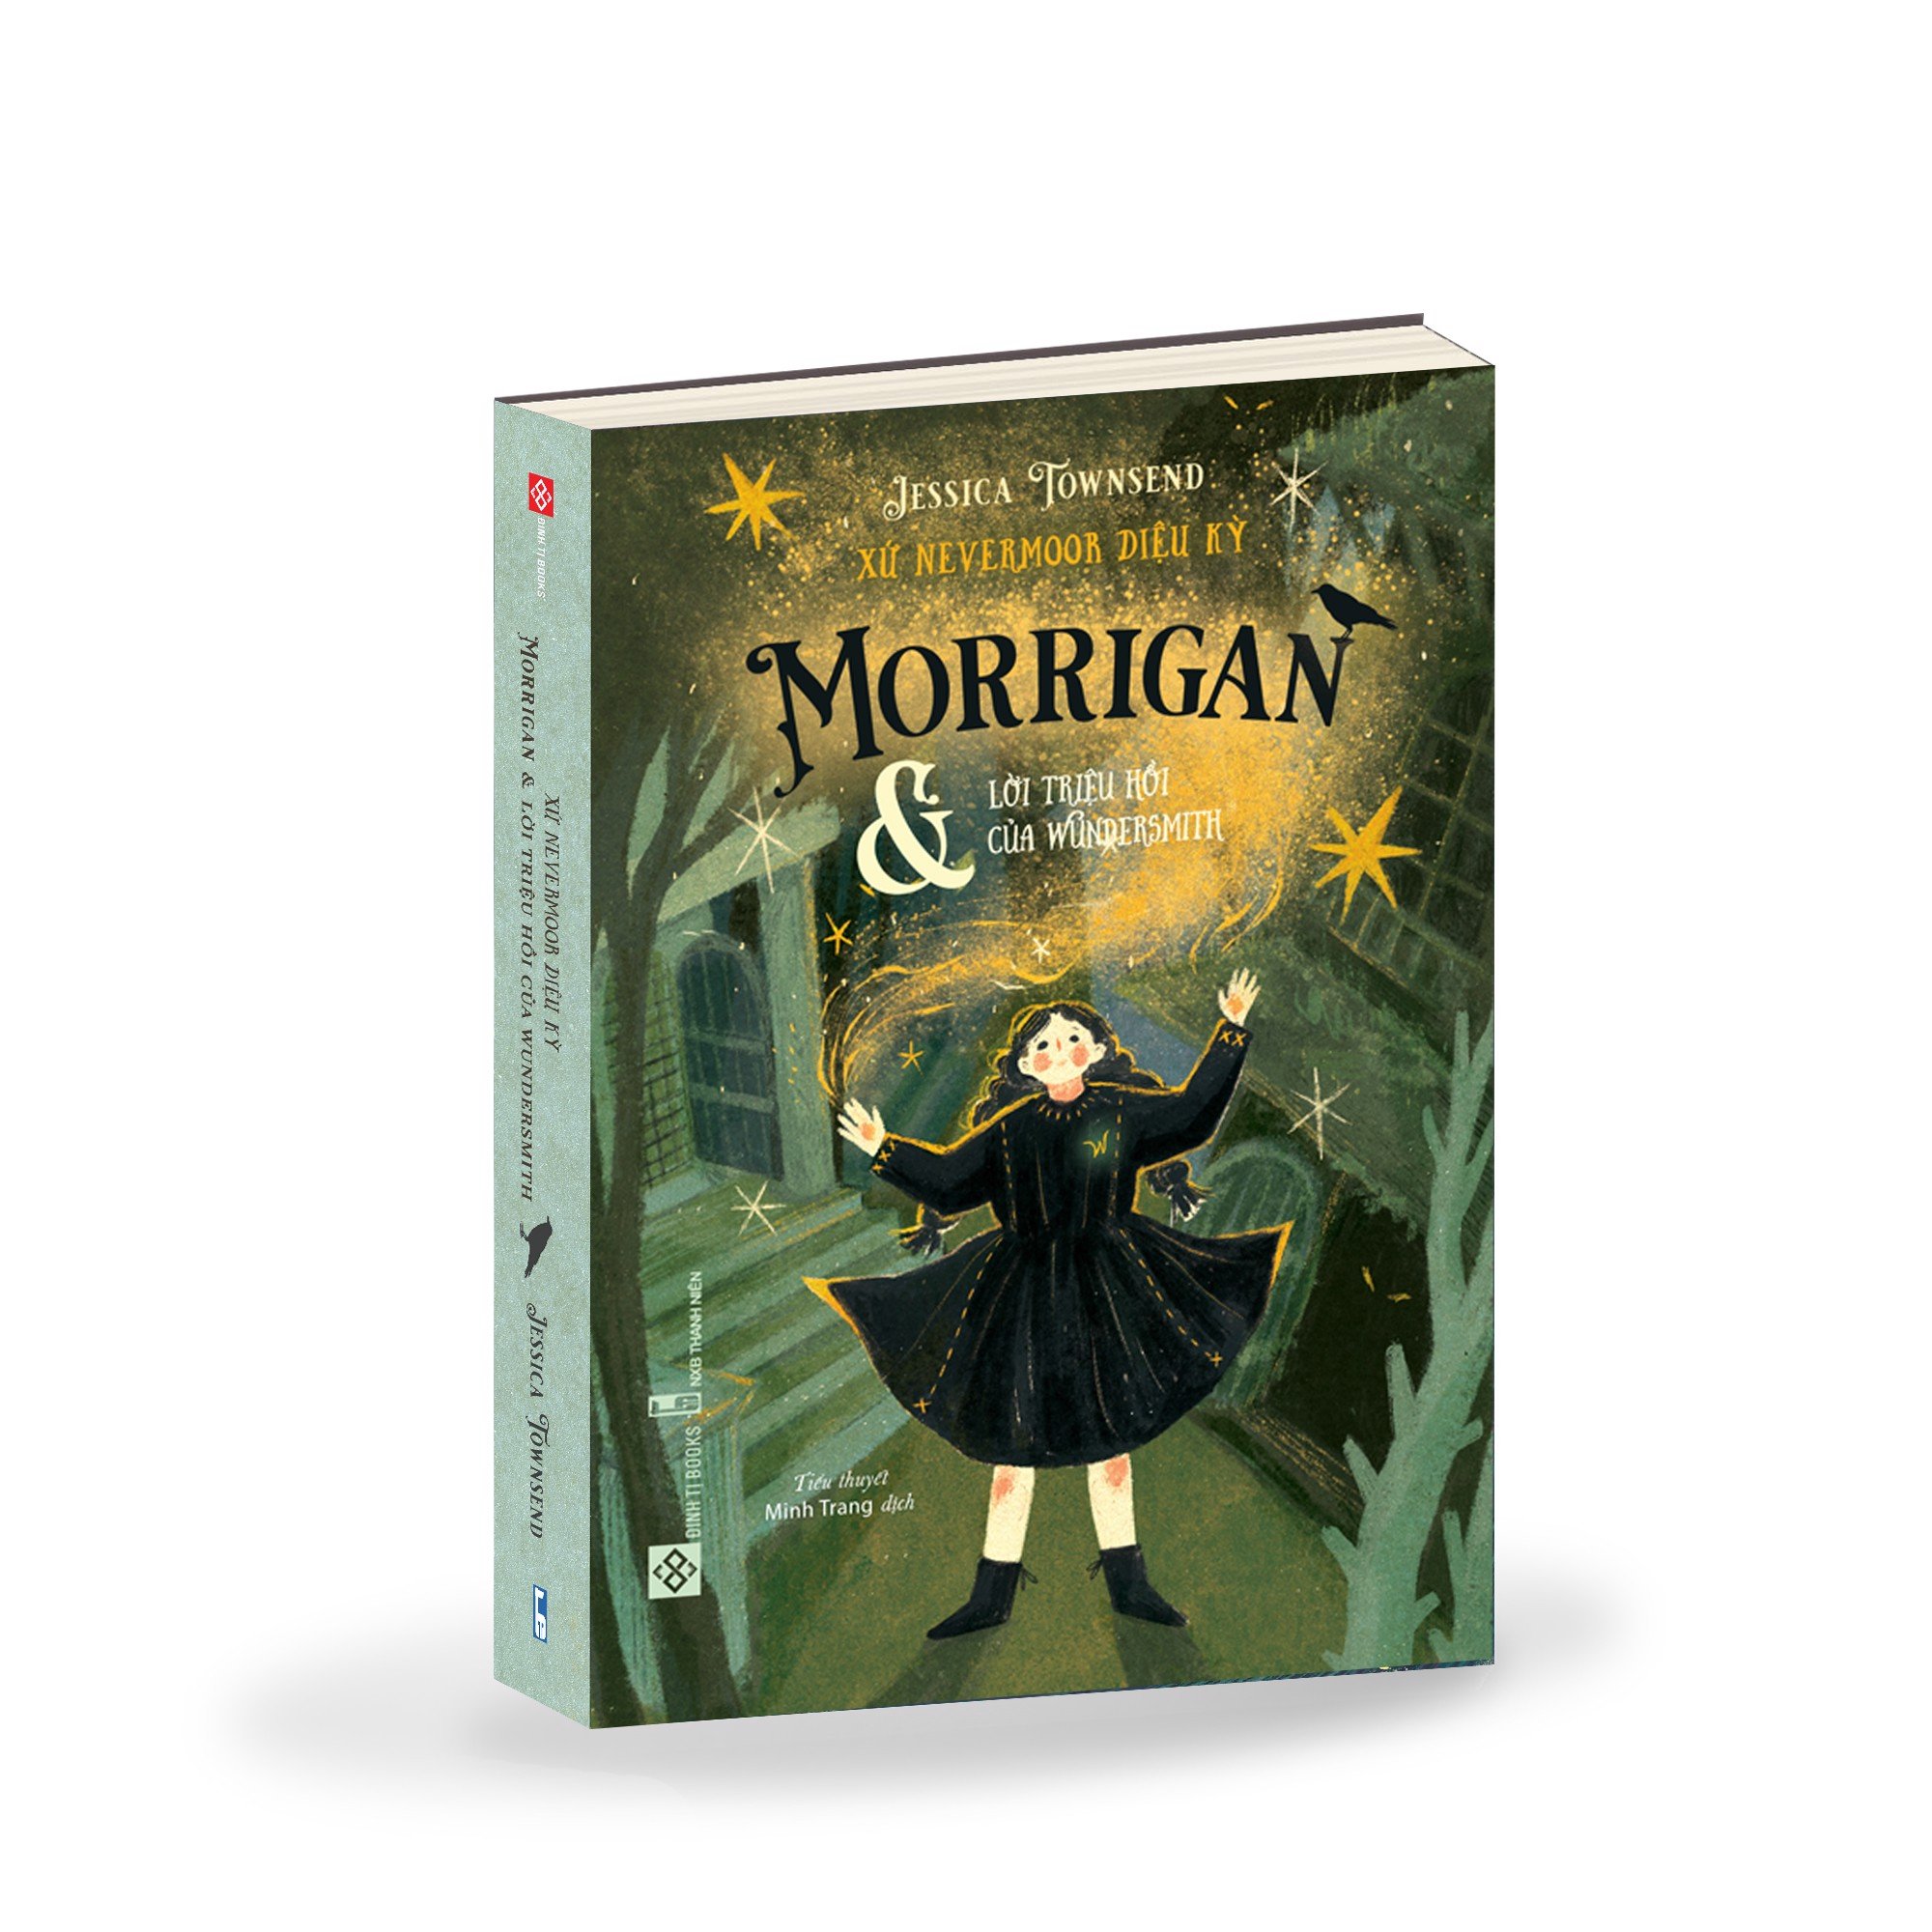 Combo 2 cuốn sách văn học giả tưởng huyền bí - Xứ Nevermoor diệu kỳ: Morrigan Và Những Thử Thách Gay Cấn + Morrigan và lời triệu hồi của Wundersmith